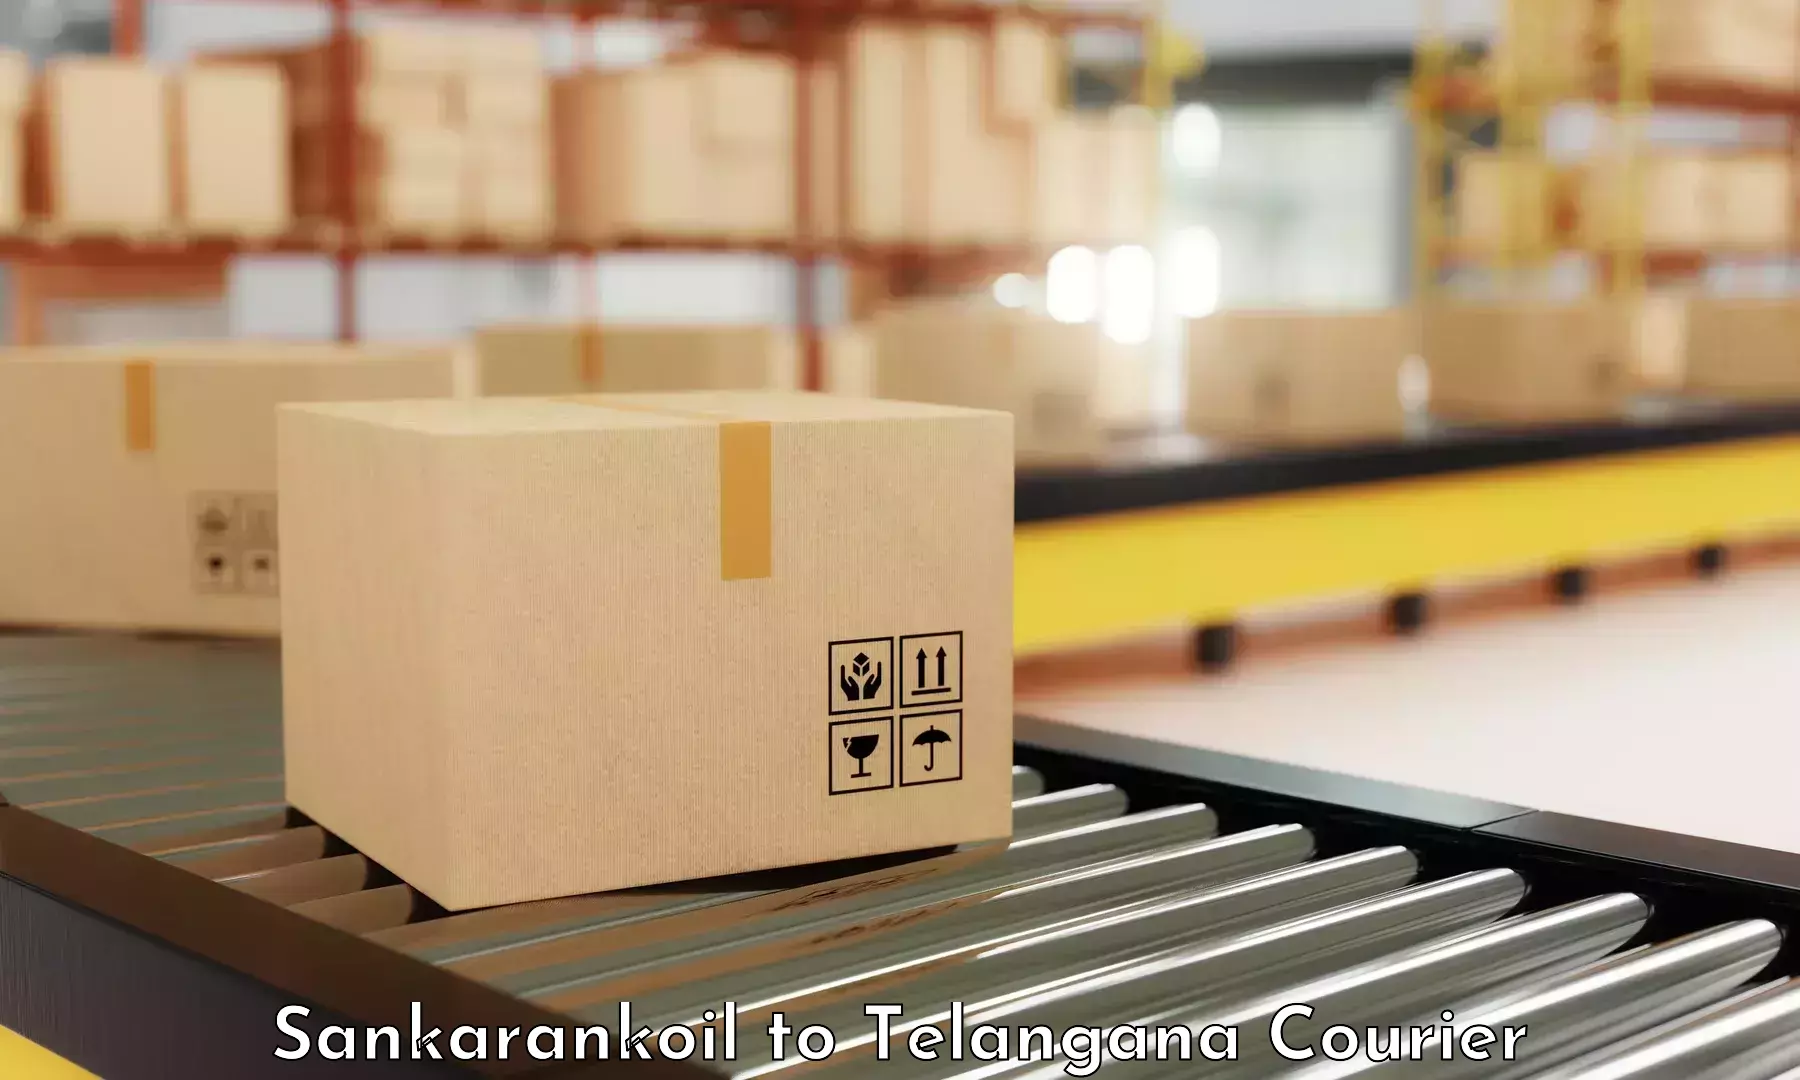 High-priority parcel service in Sankarankoil to Sikanderguda